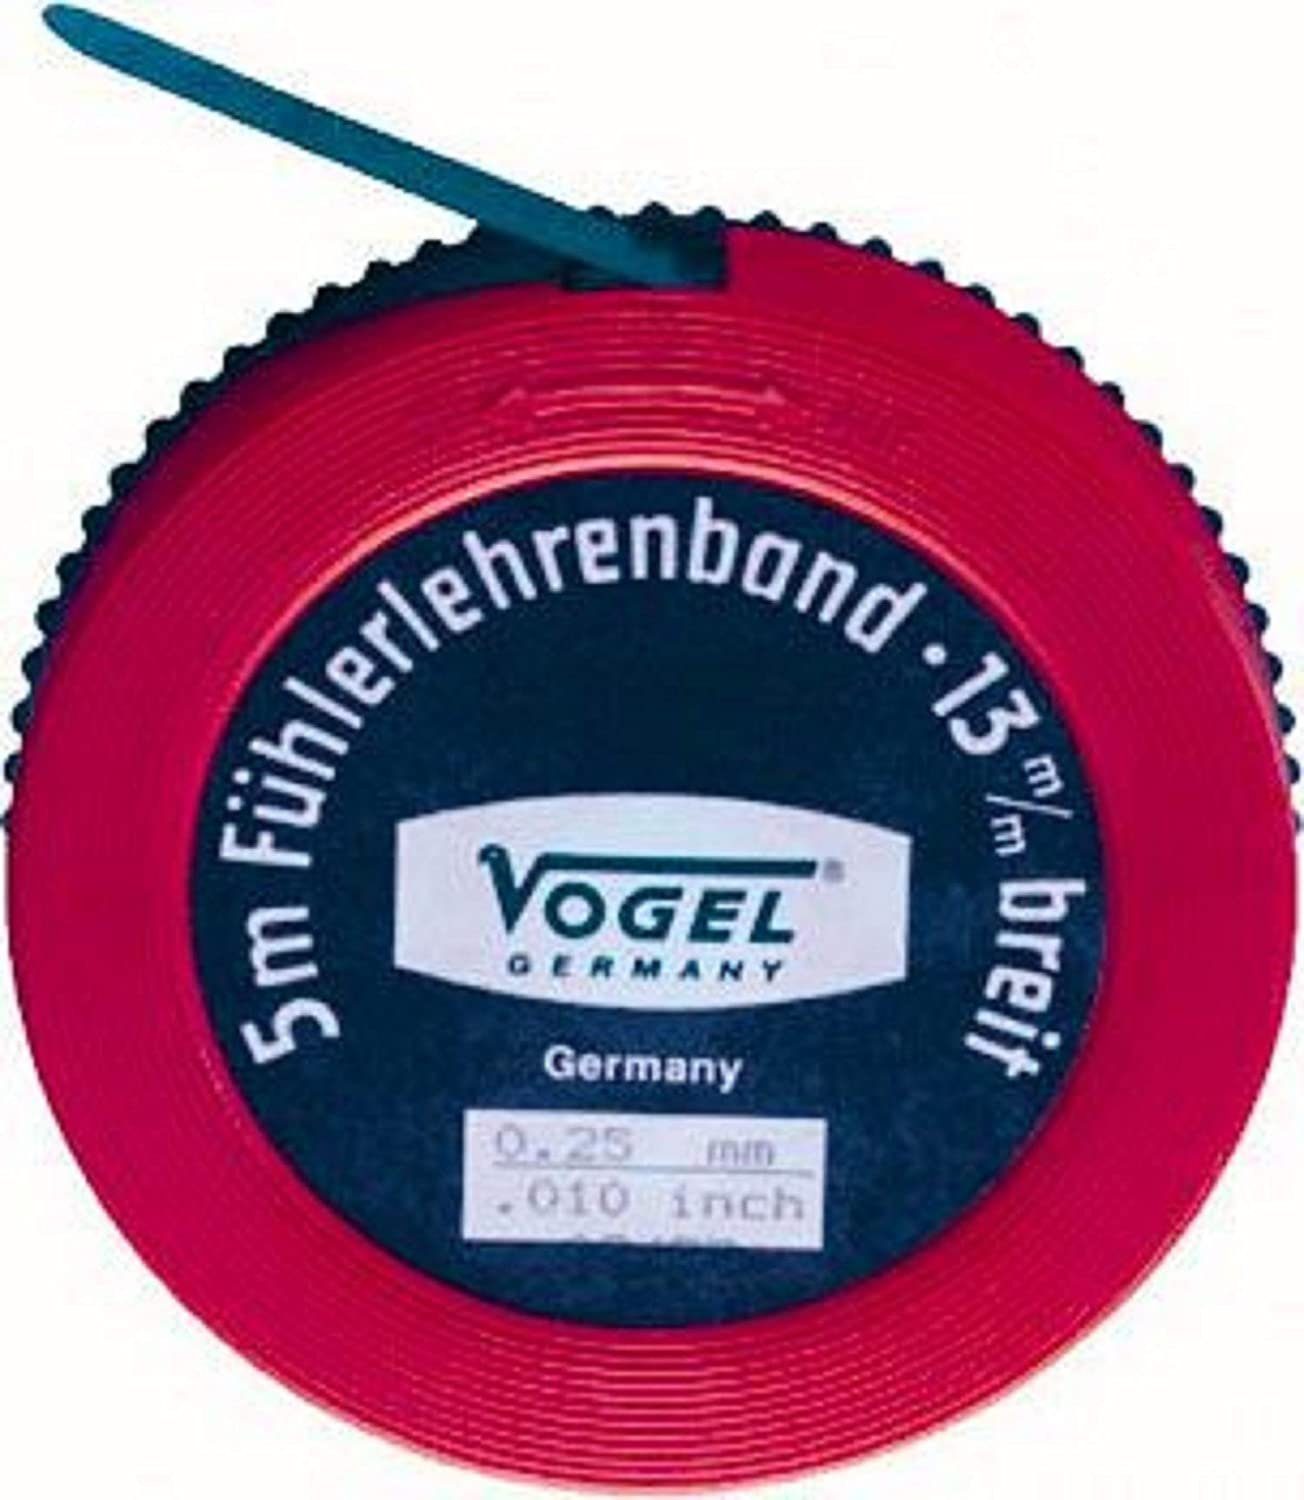 Germany 0,10 mm Fühlerlehre Messbereich Vogel m Federstahl Germany 5 Vogel Fühlerlehrenband